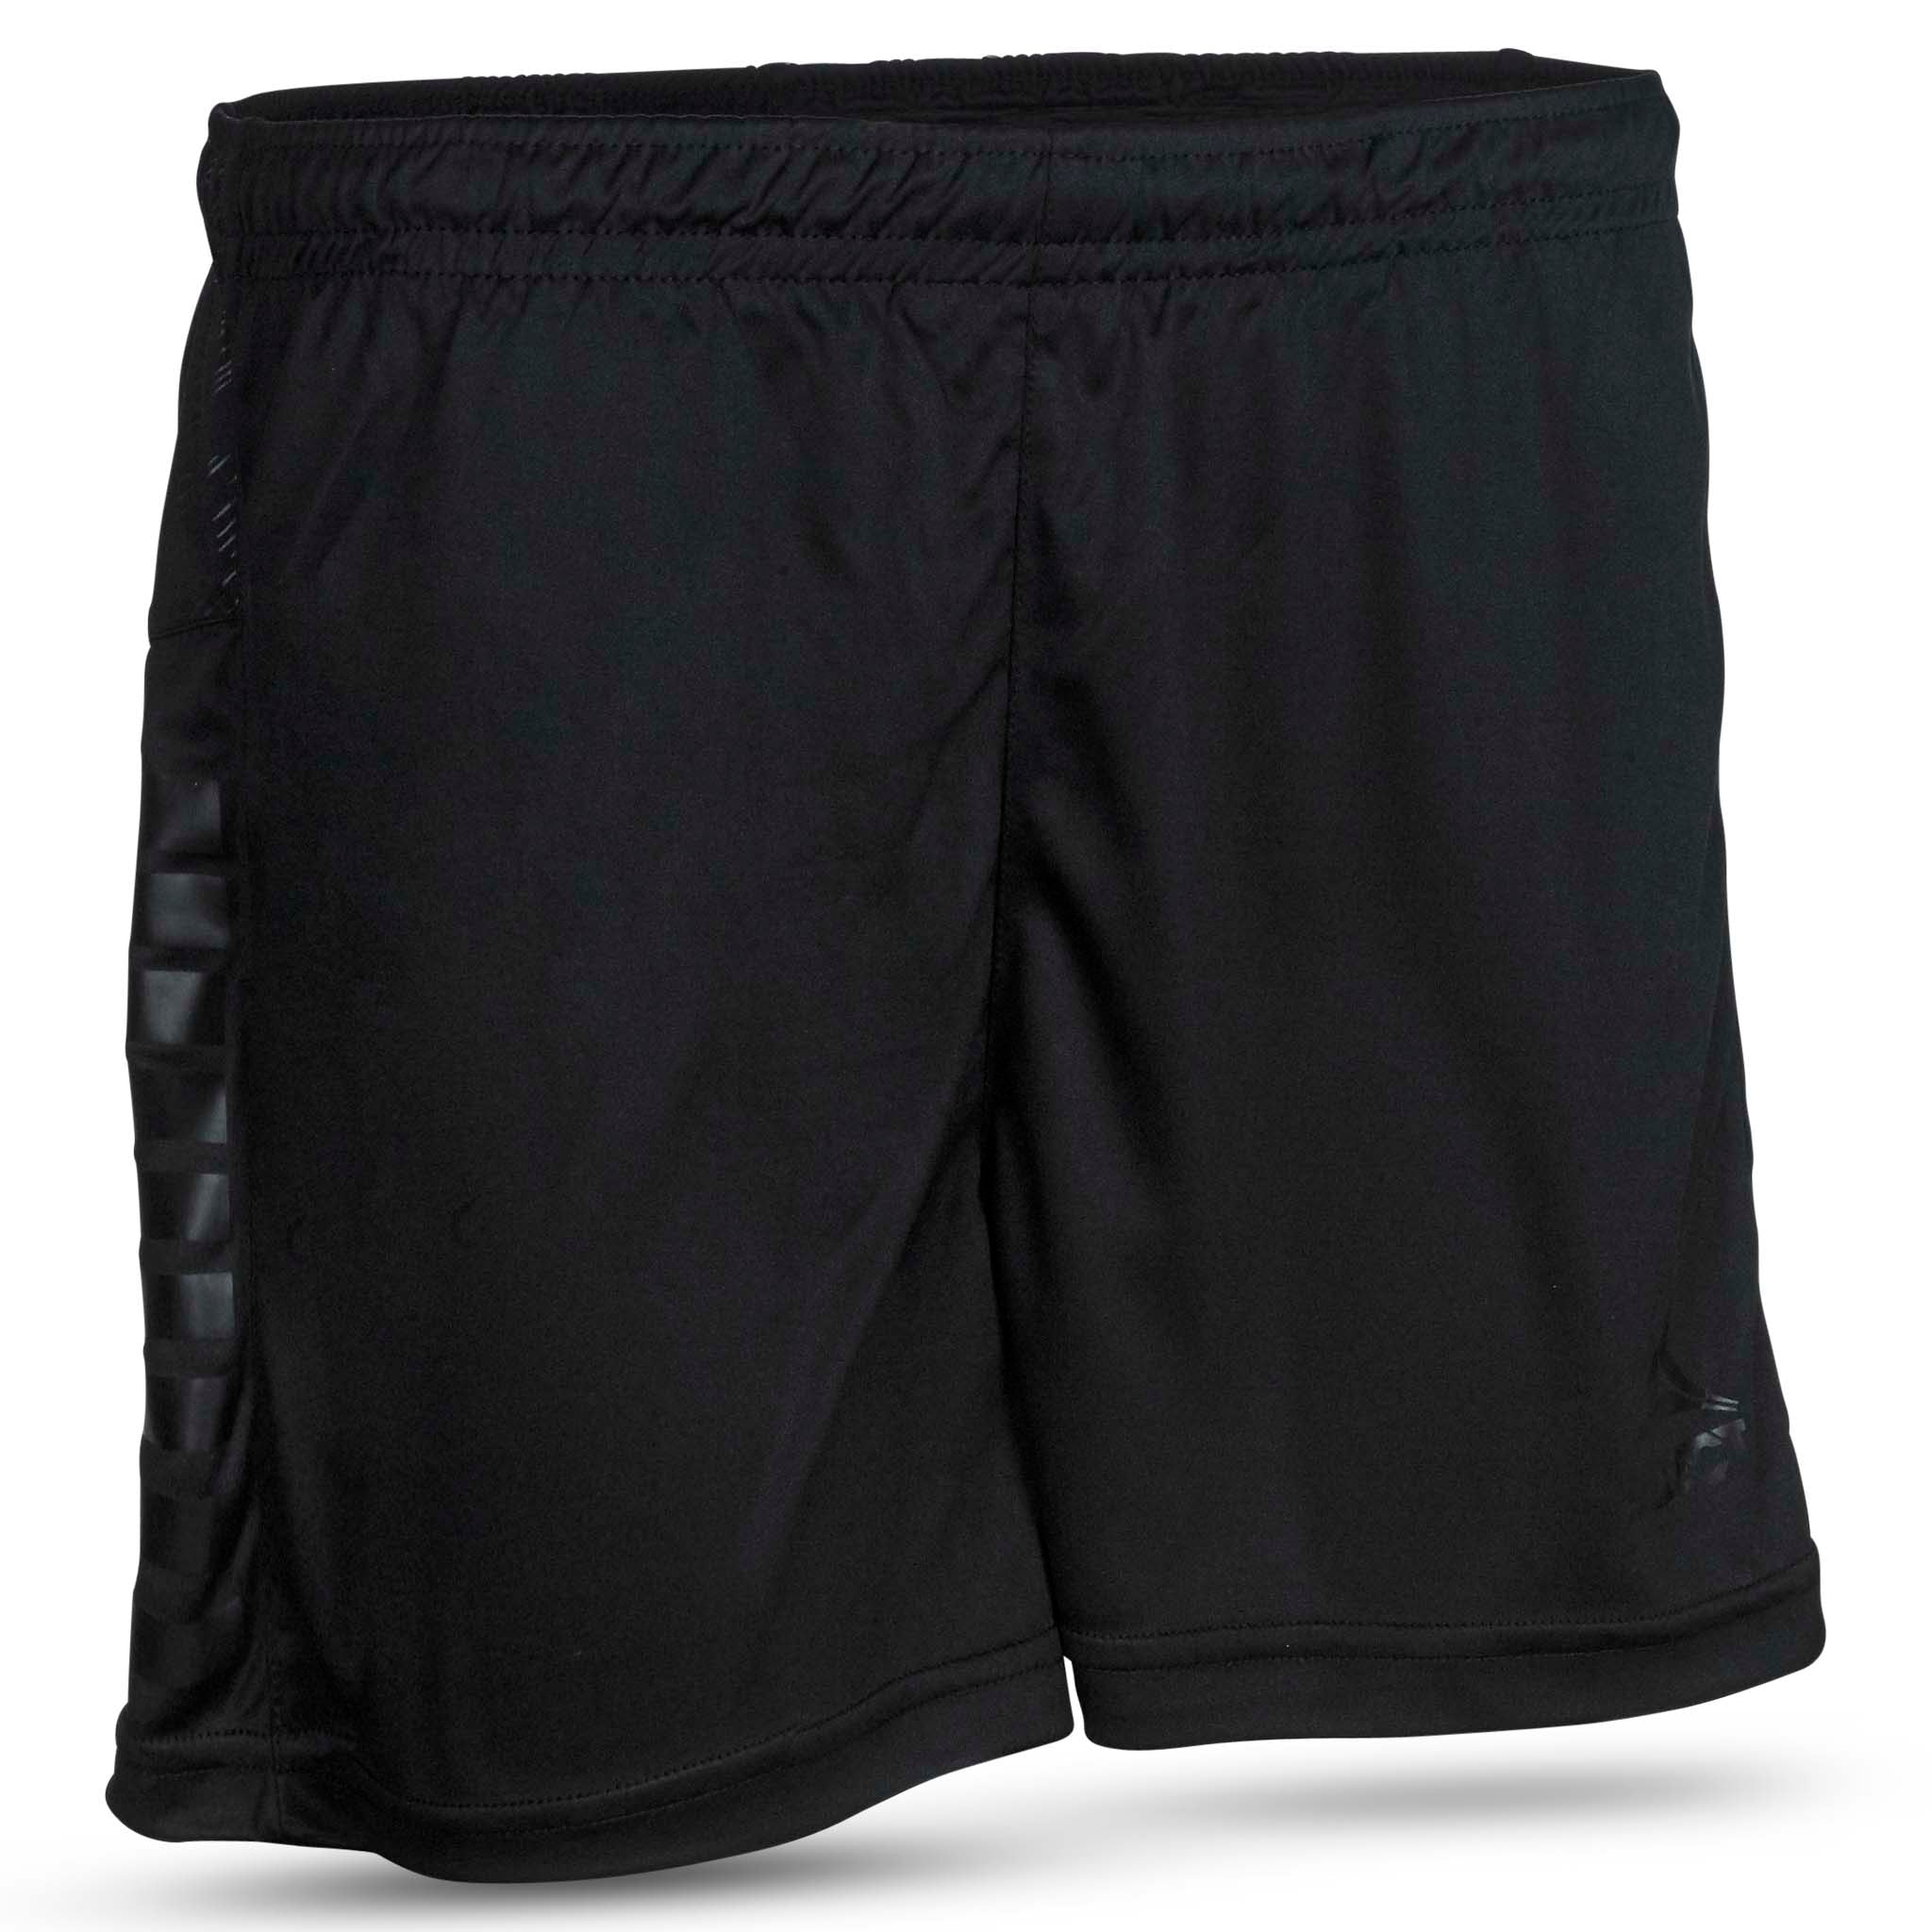 Spain Player shorts - women #colour_black/black